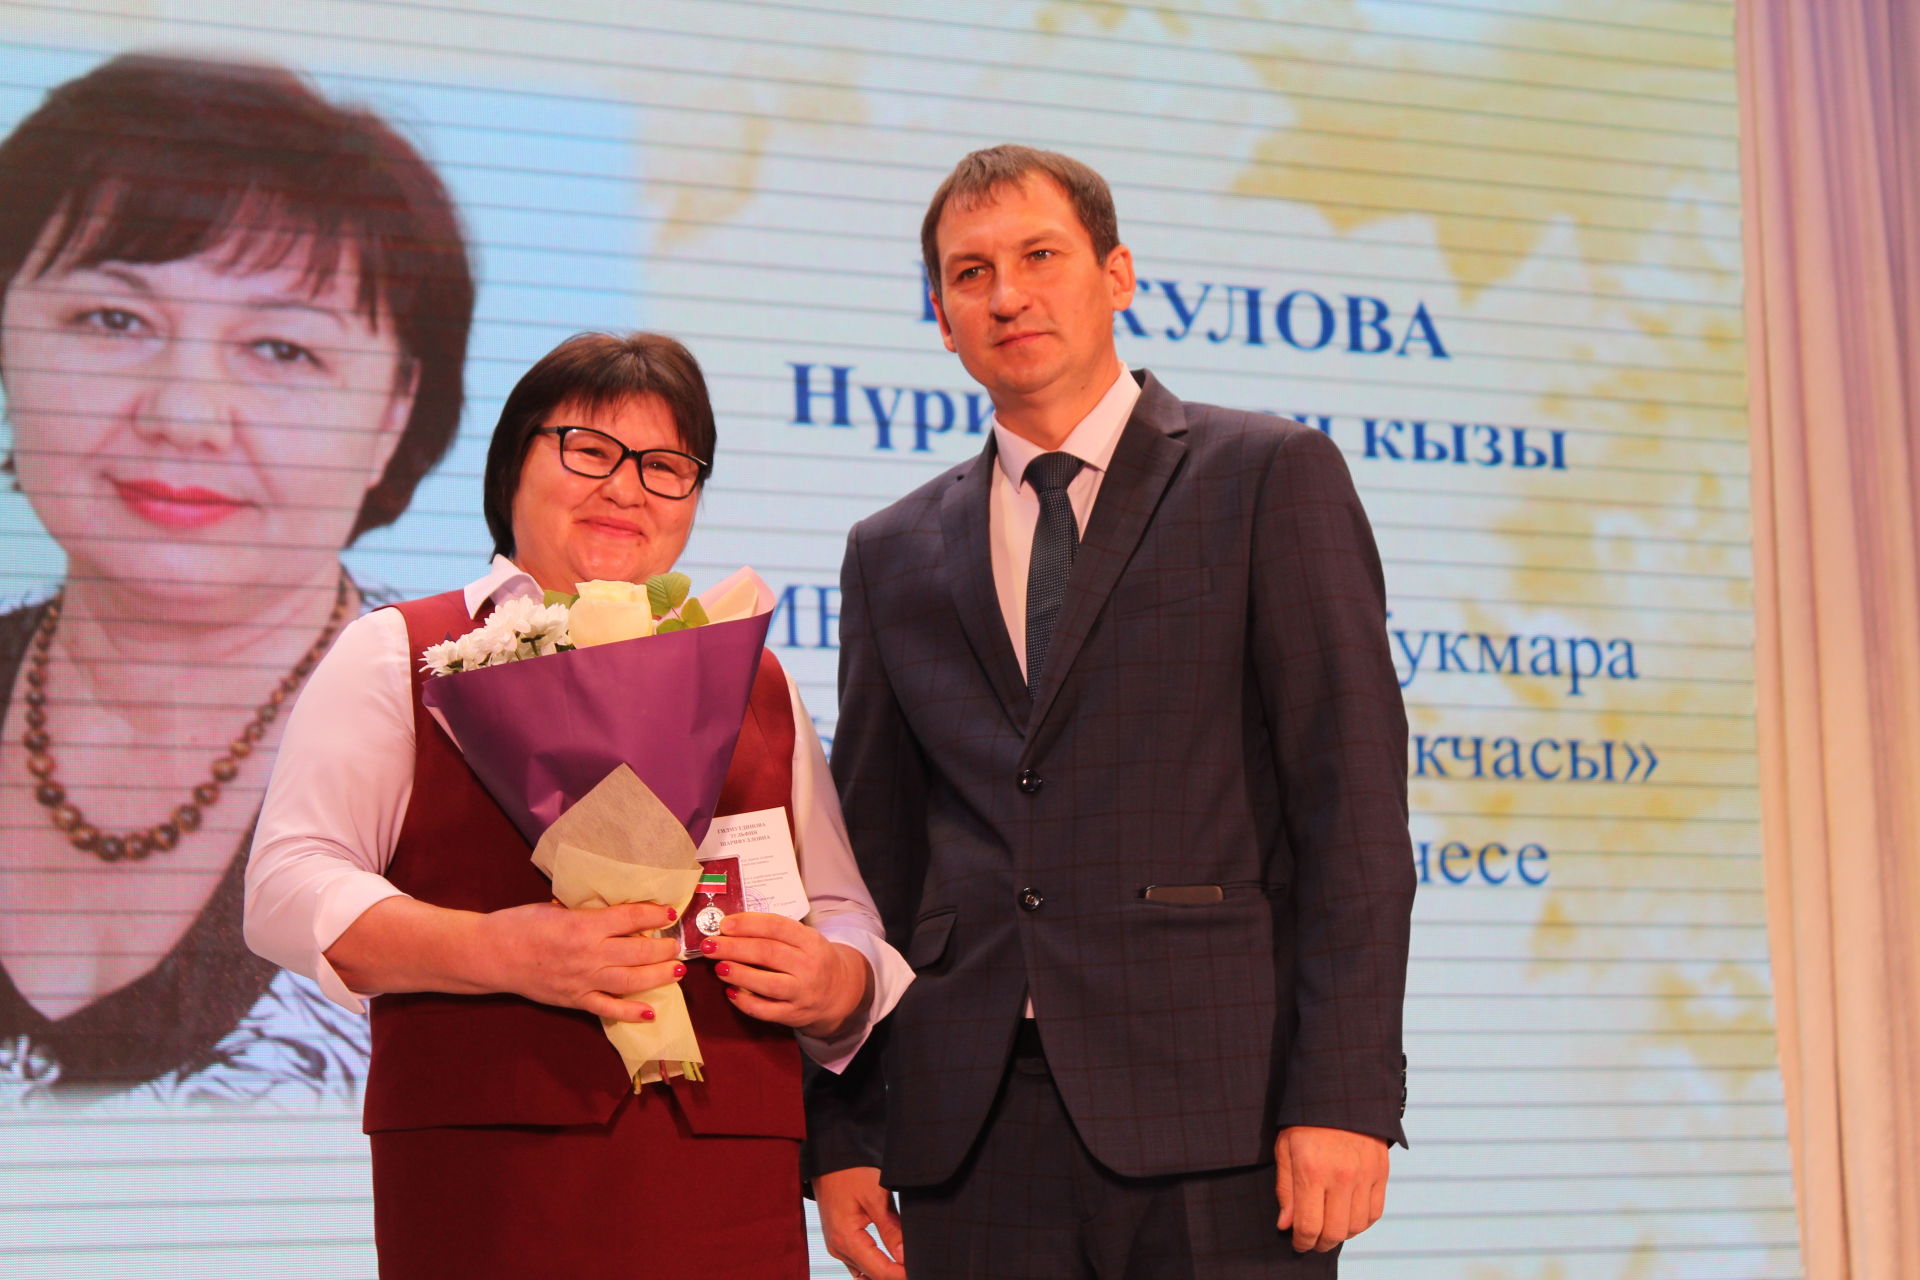 Сергей Димитриев: Работать учителем могут только те, у кого есть талант